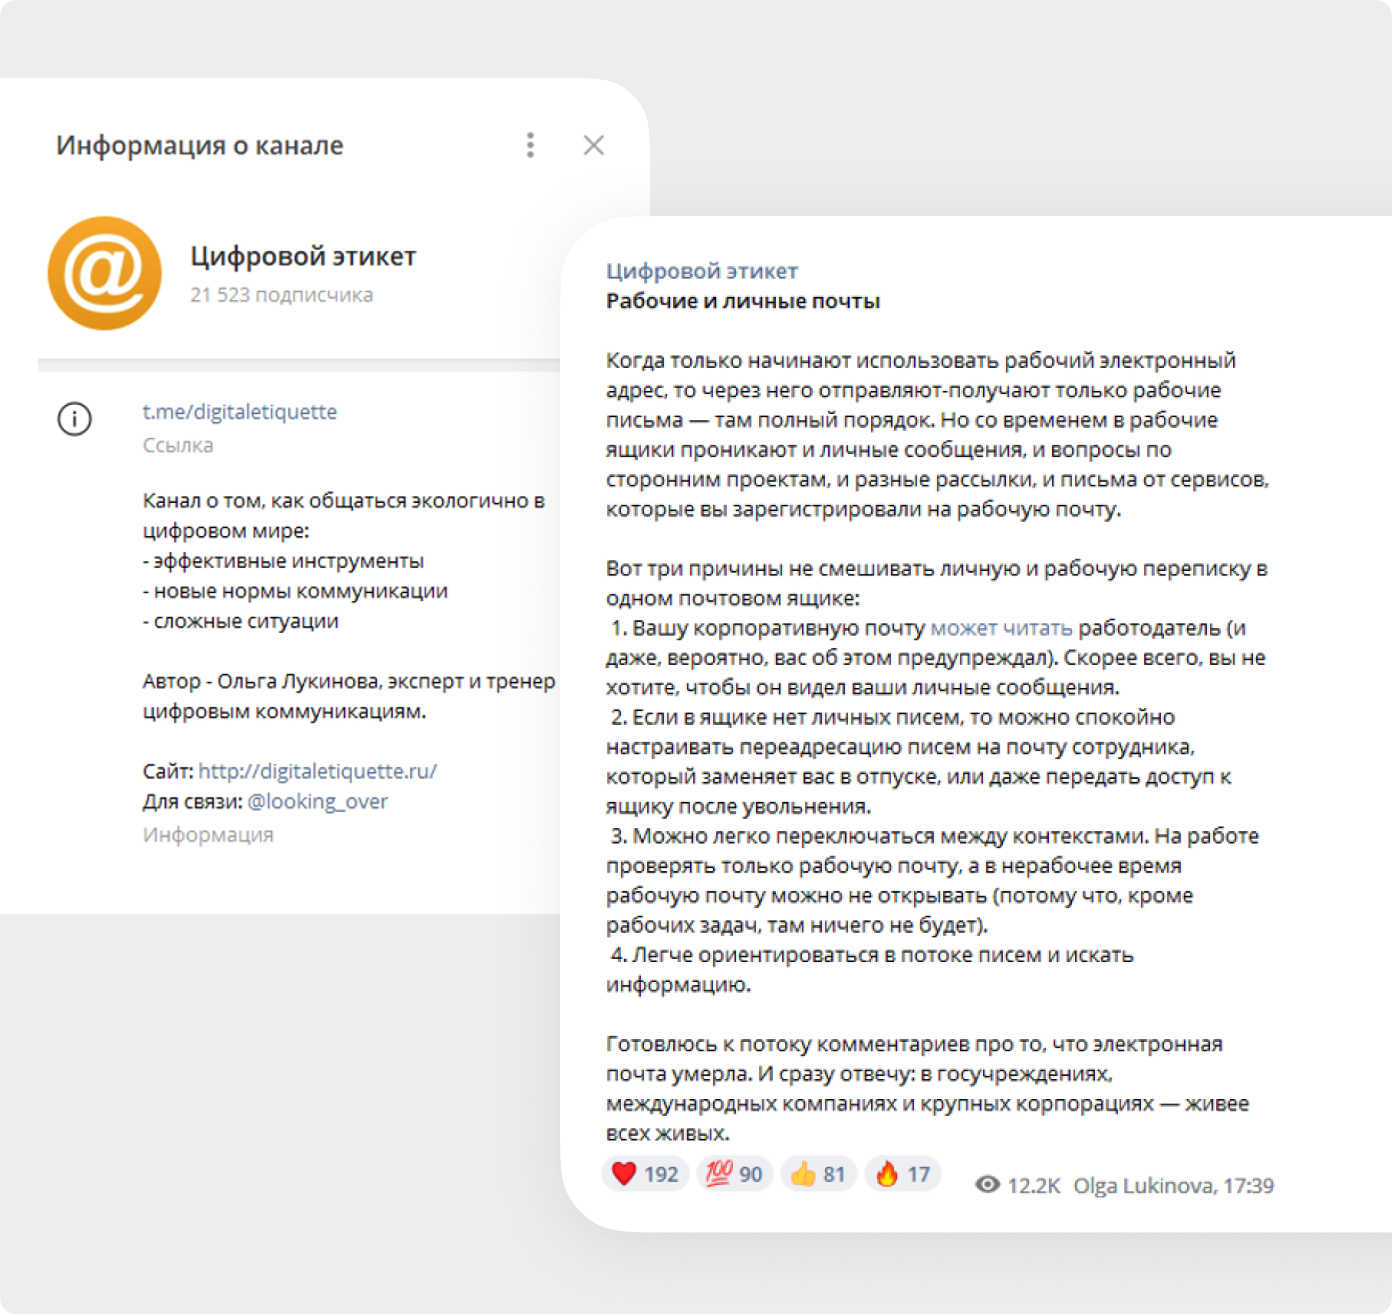 Эксперт в области цифрового этикета Ольга Лукинова ведет канал в Телеграме, где рассказывает о нормах делового общения в диджитал-сфере